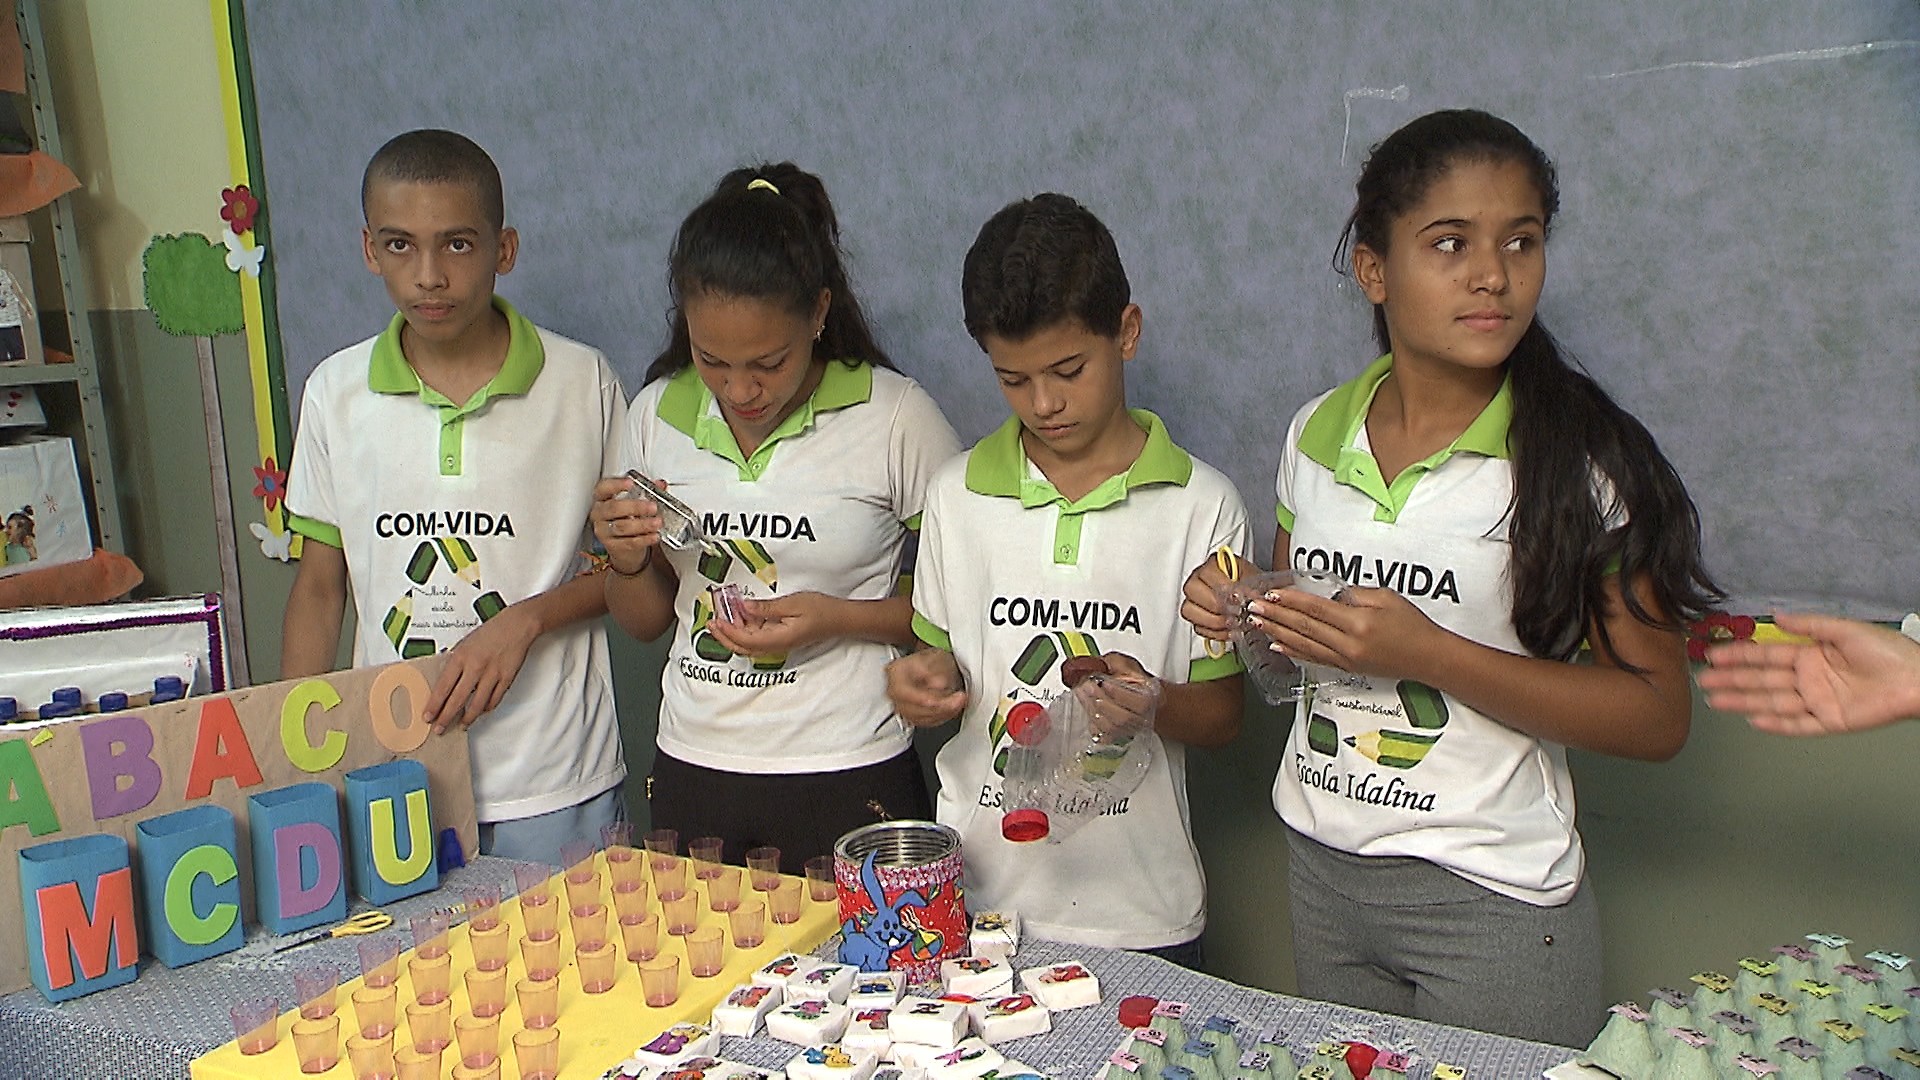 Escola pública de Correntina desenvolve projeto para cuidar do meio ambiente (Foto: Divulgação)